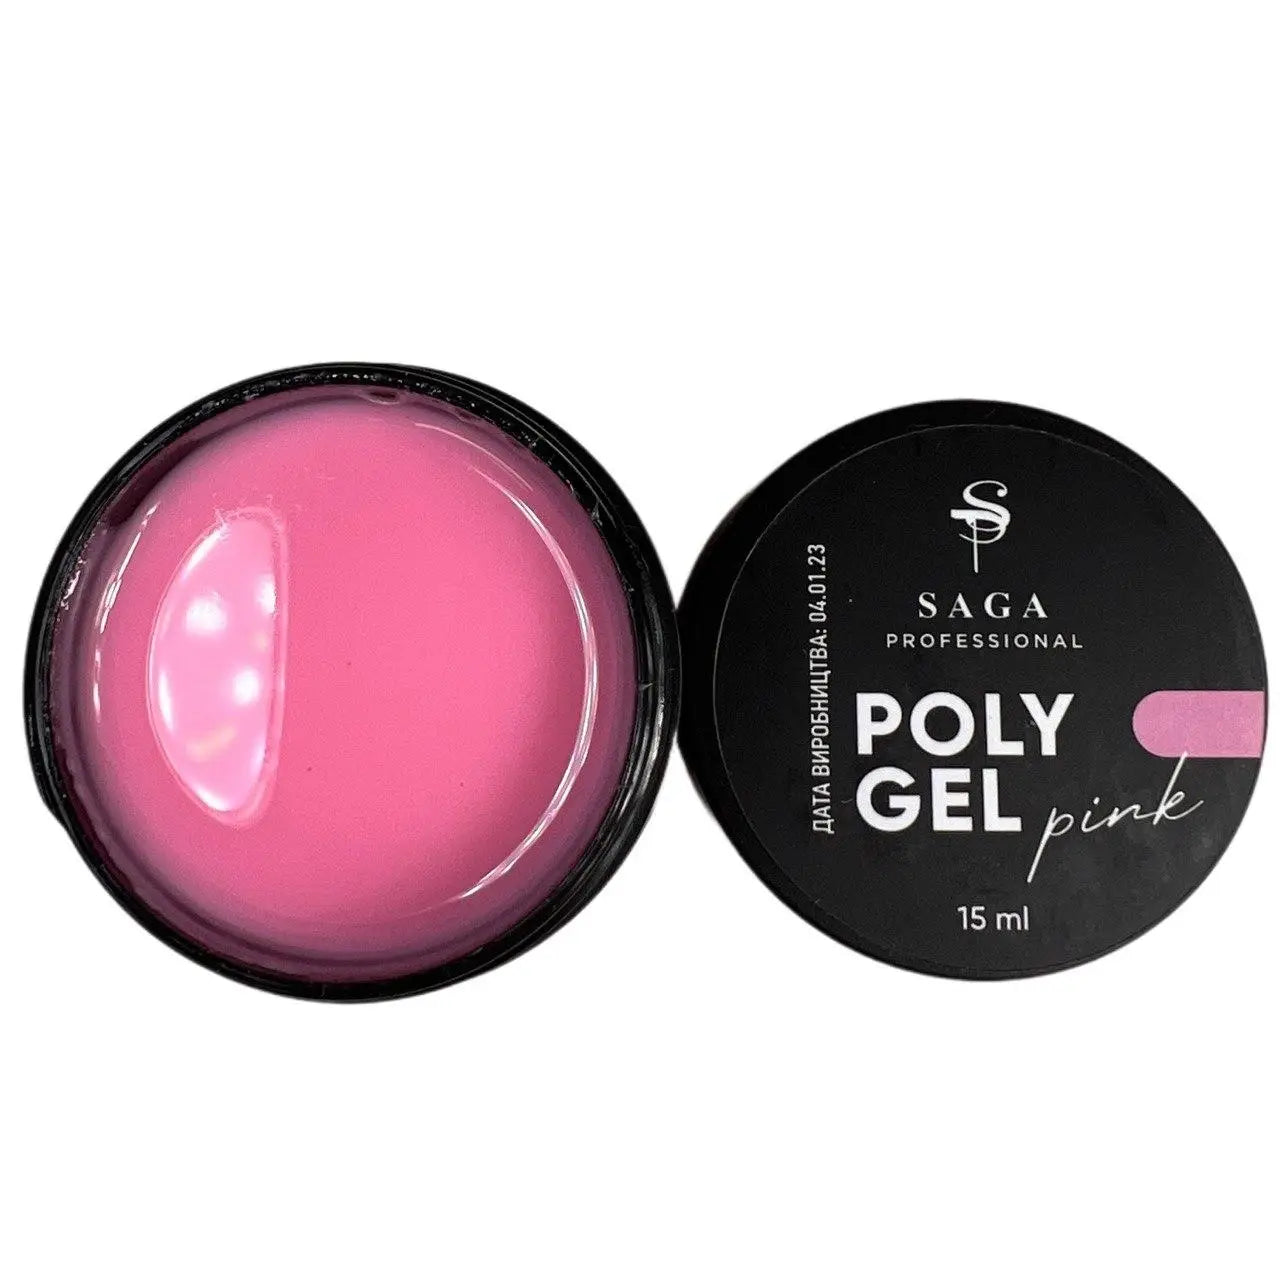 SAGA professional POLY GEL(in a jar)  Pink 15 ml